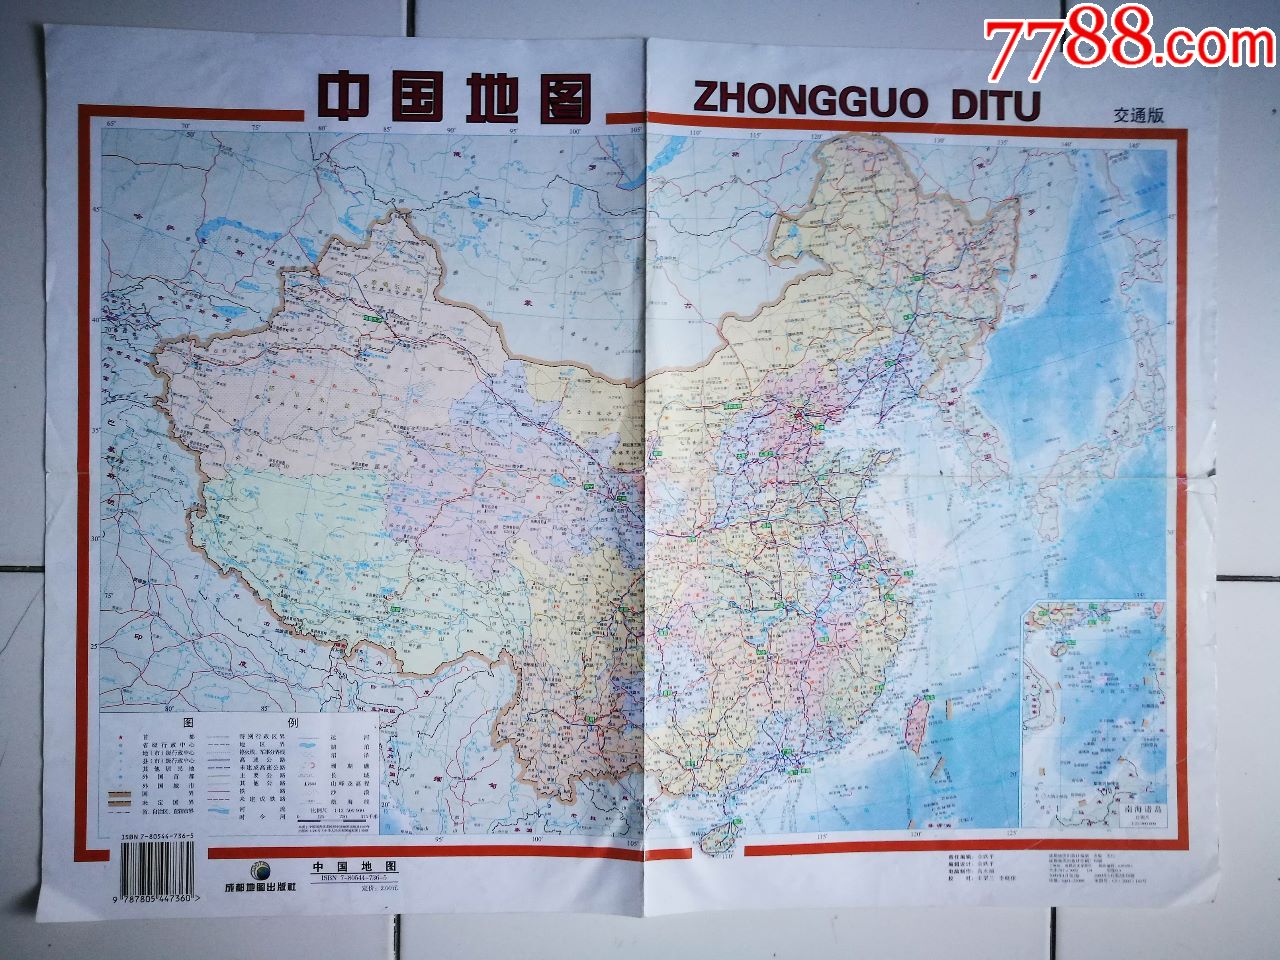 >> 中国地图,旅游景点门票  滚动鼠标滚轴,图片即可轻松放大,缩小